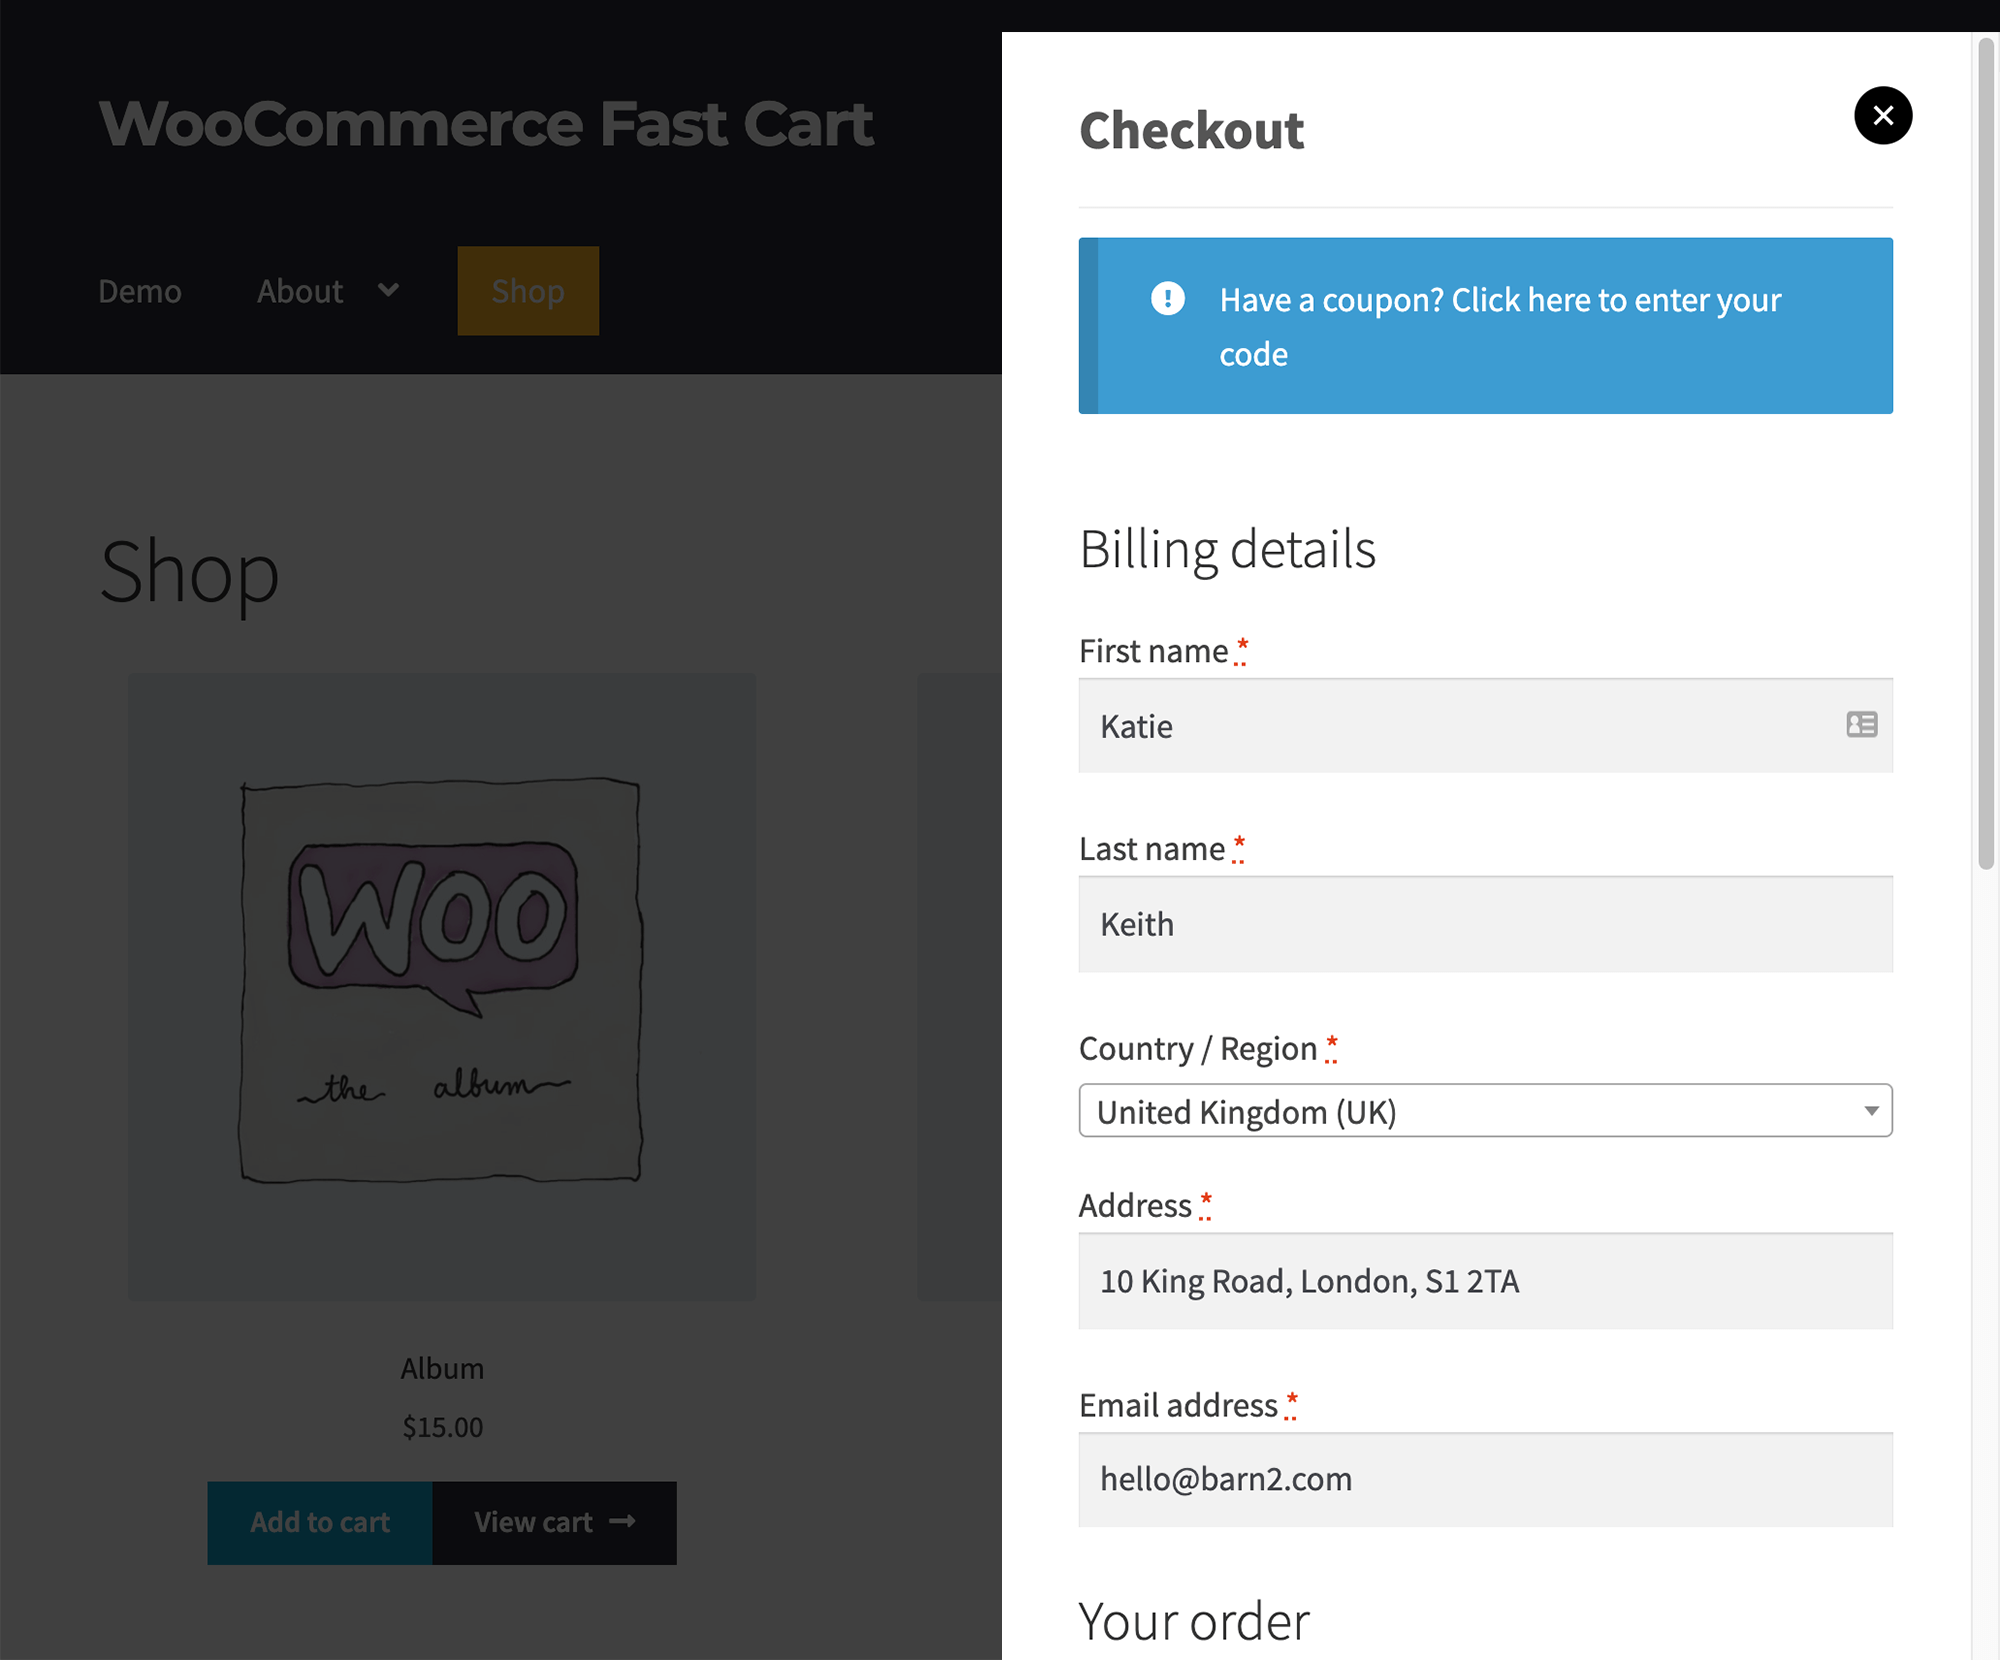 WooCommerce 快速购物车 - 直接在快速购物车中显示 WooCommerce 结帐